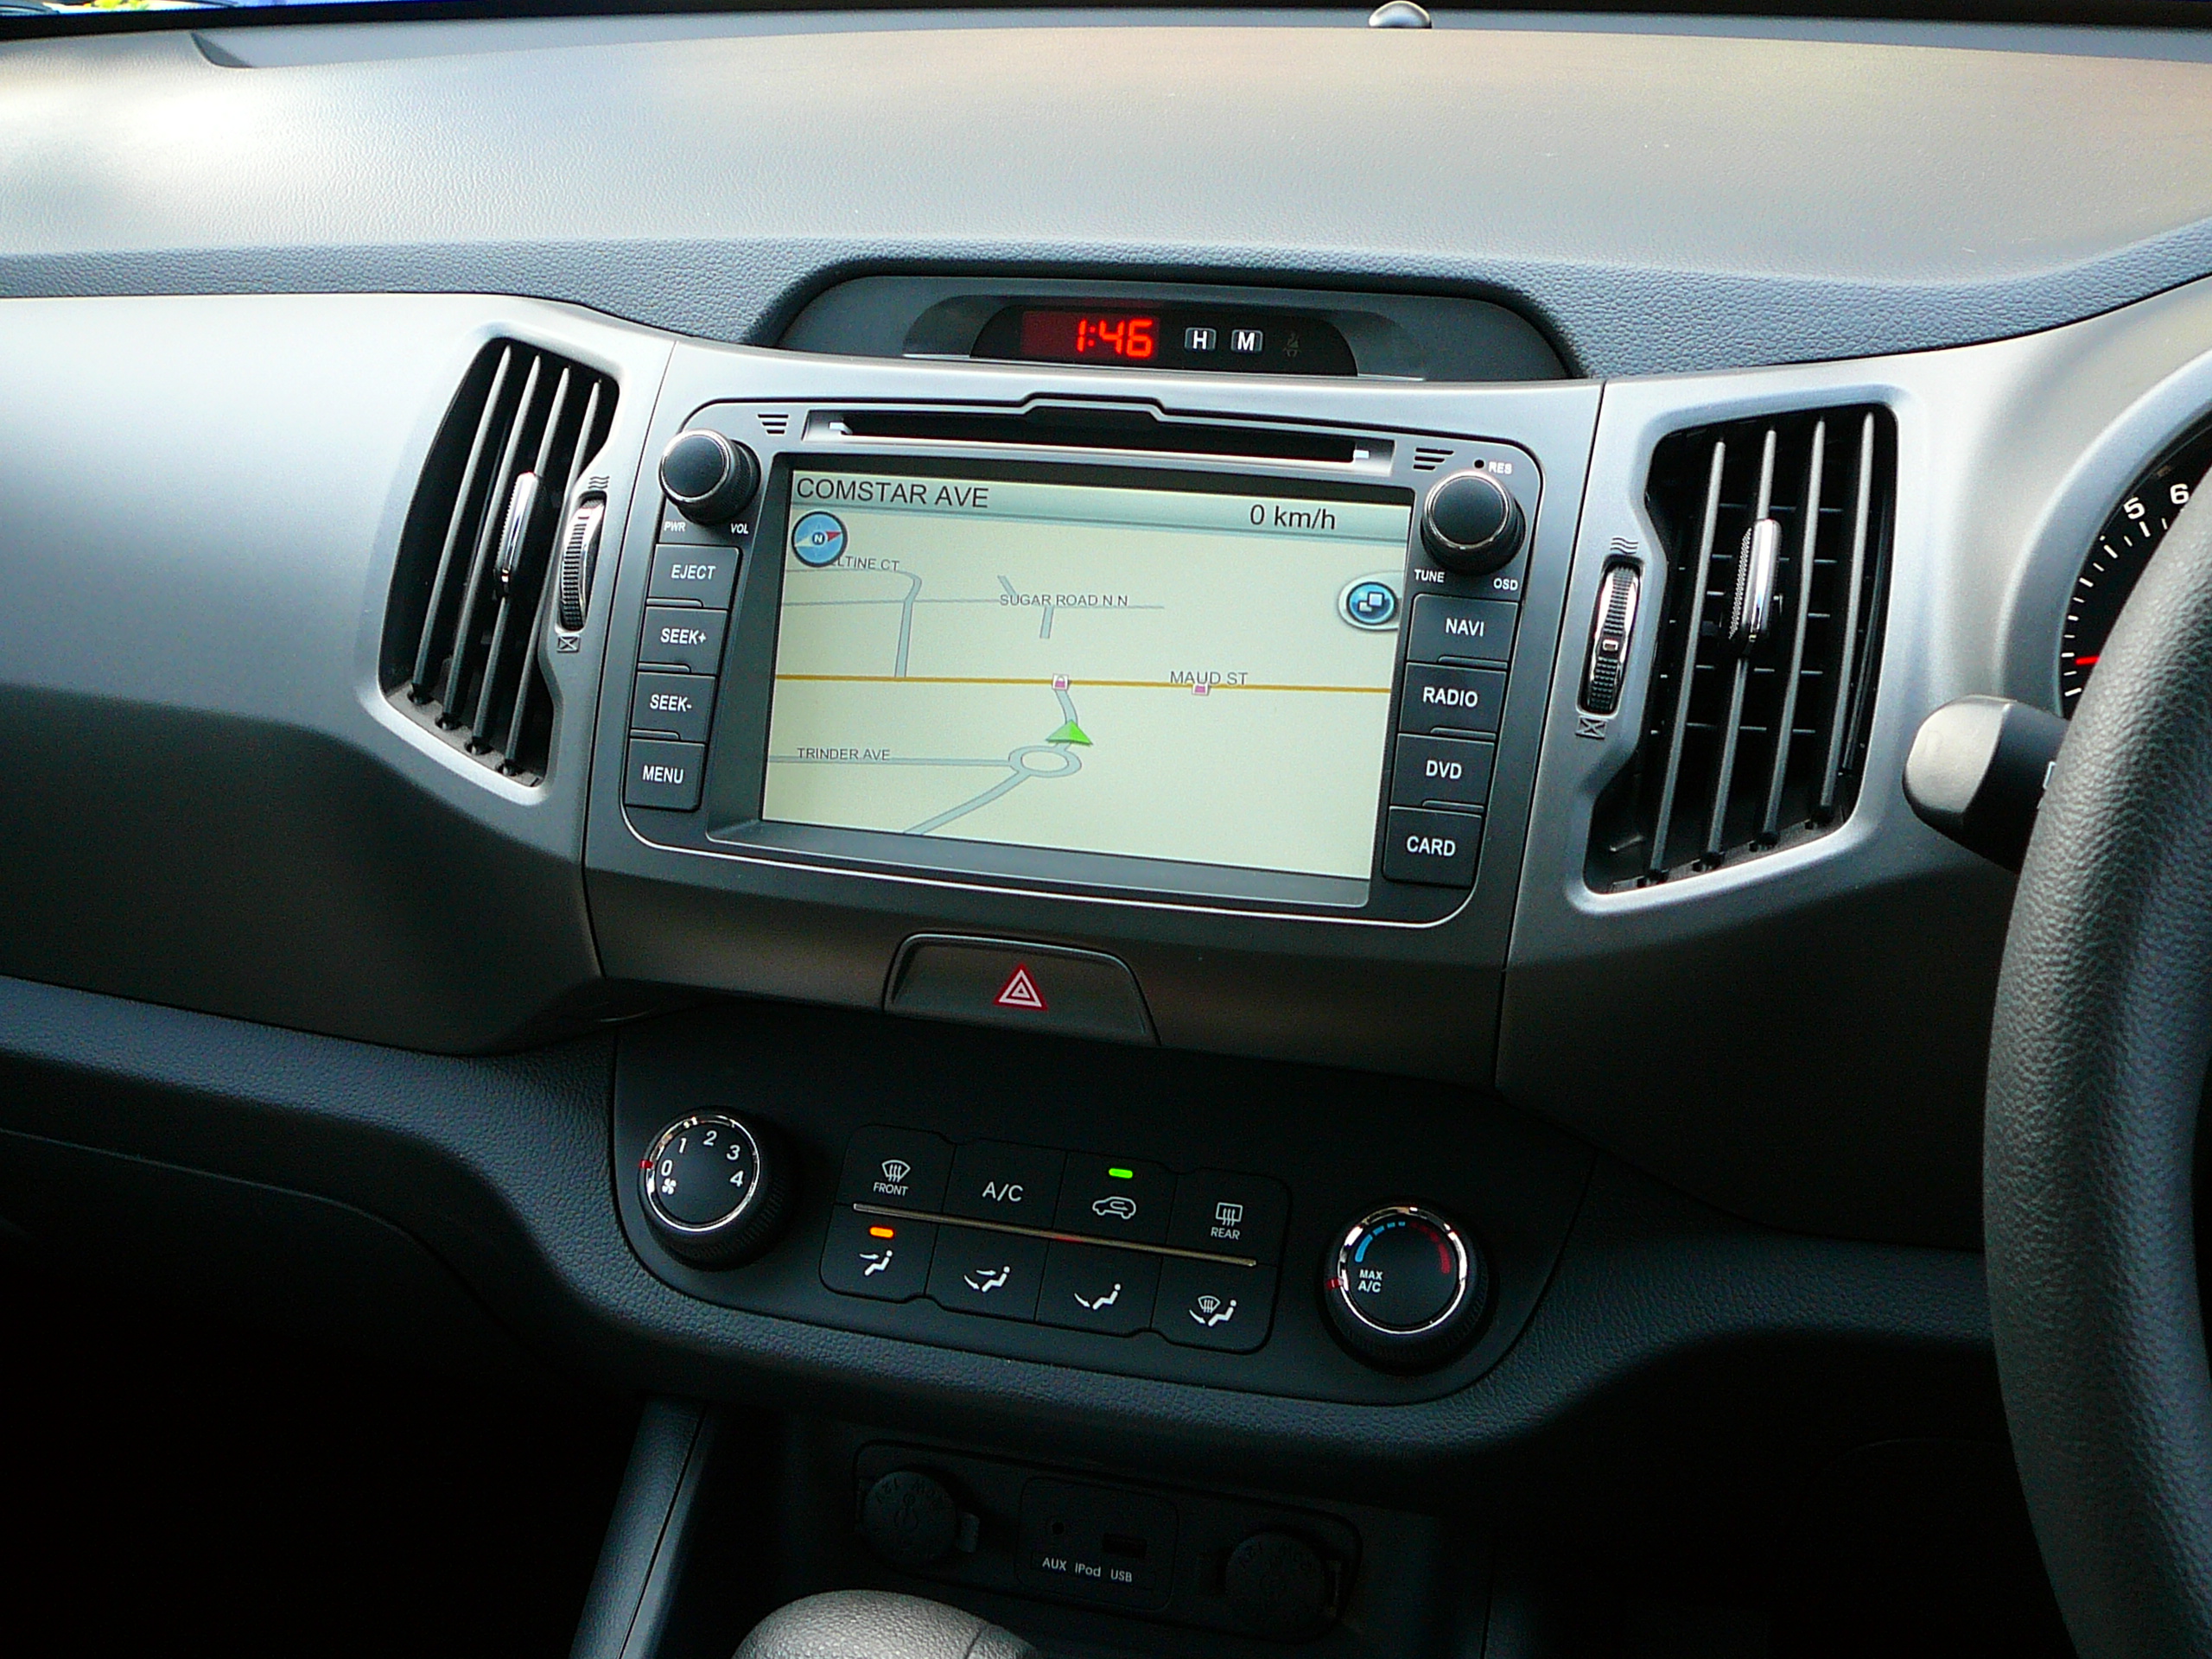 Kia Sportage 2012, Opal GPS Navigation Unit